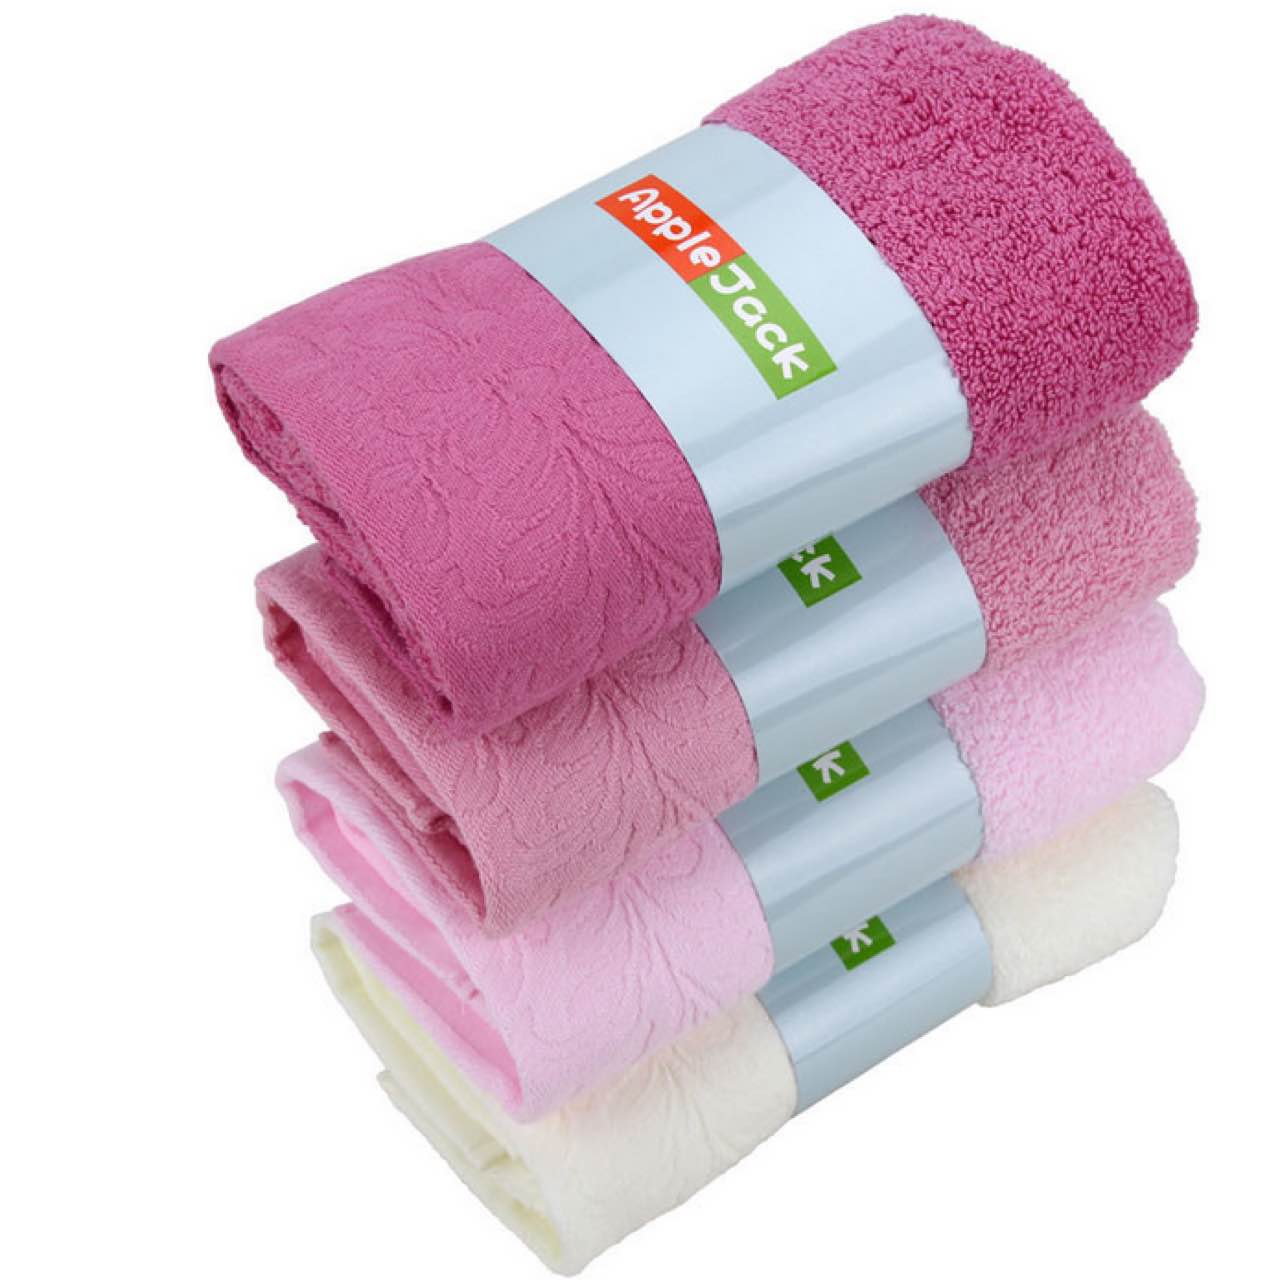 婴儿级别标准 A类毛巾 高档纯棉 健康无甲醛 加厚强吸水 多色可选